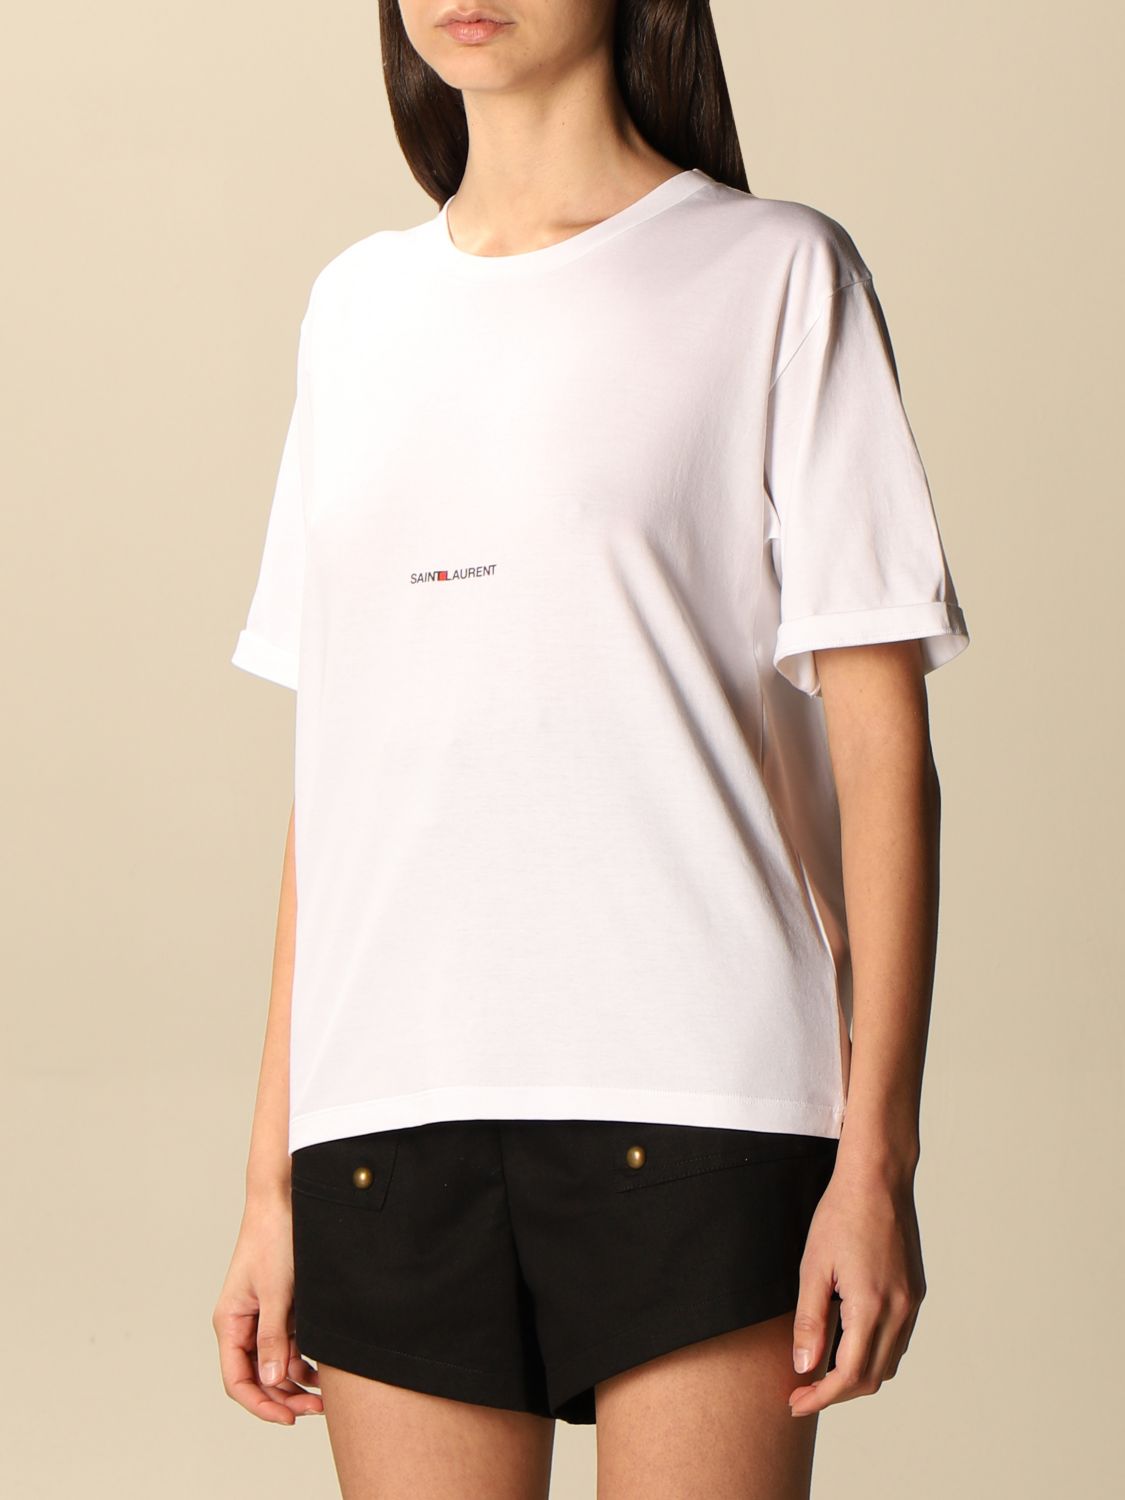 Camiseta Saint Laurent: Camiseta mujer Saint Laurent blanco 4